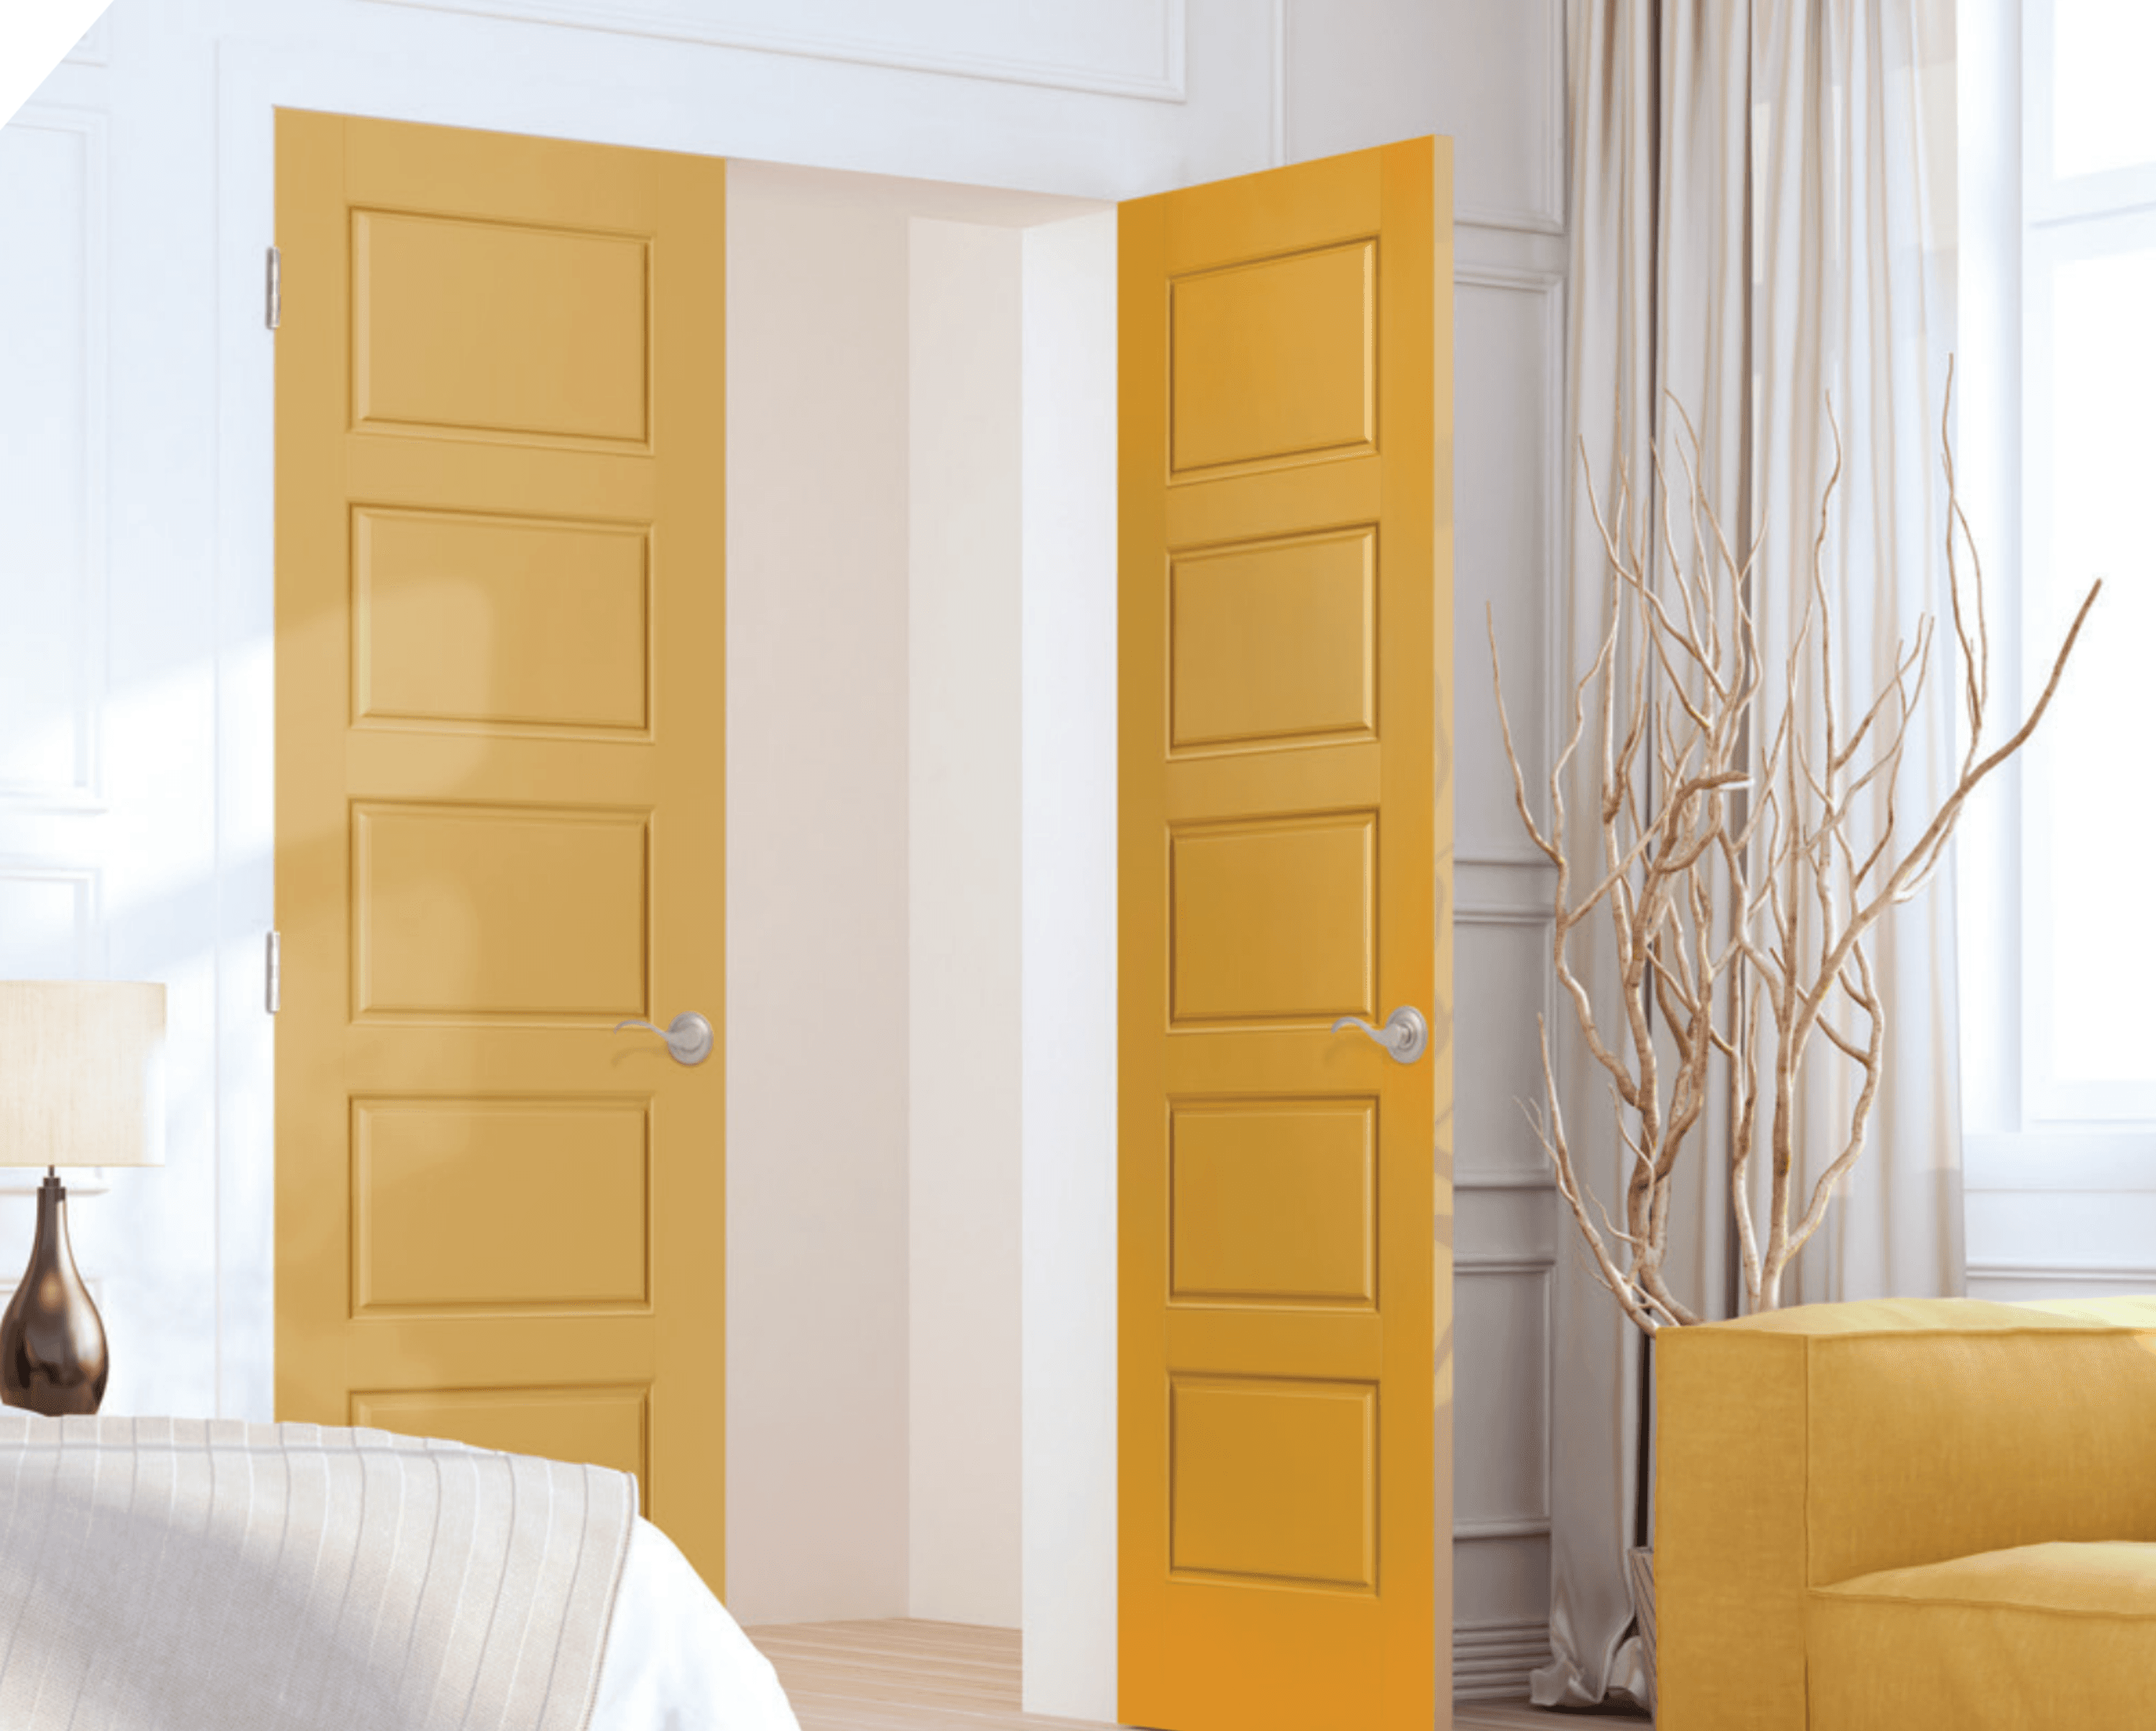 ماسونايت - ريفرسايد - أبواب صفراء مزدوجة